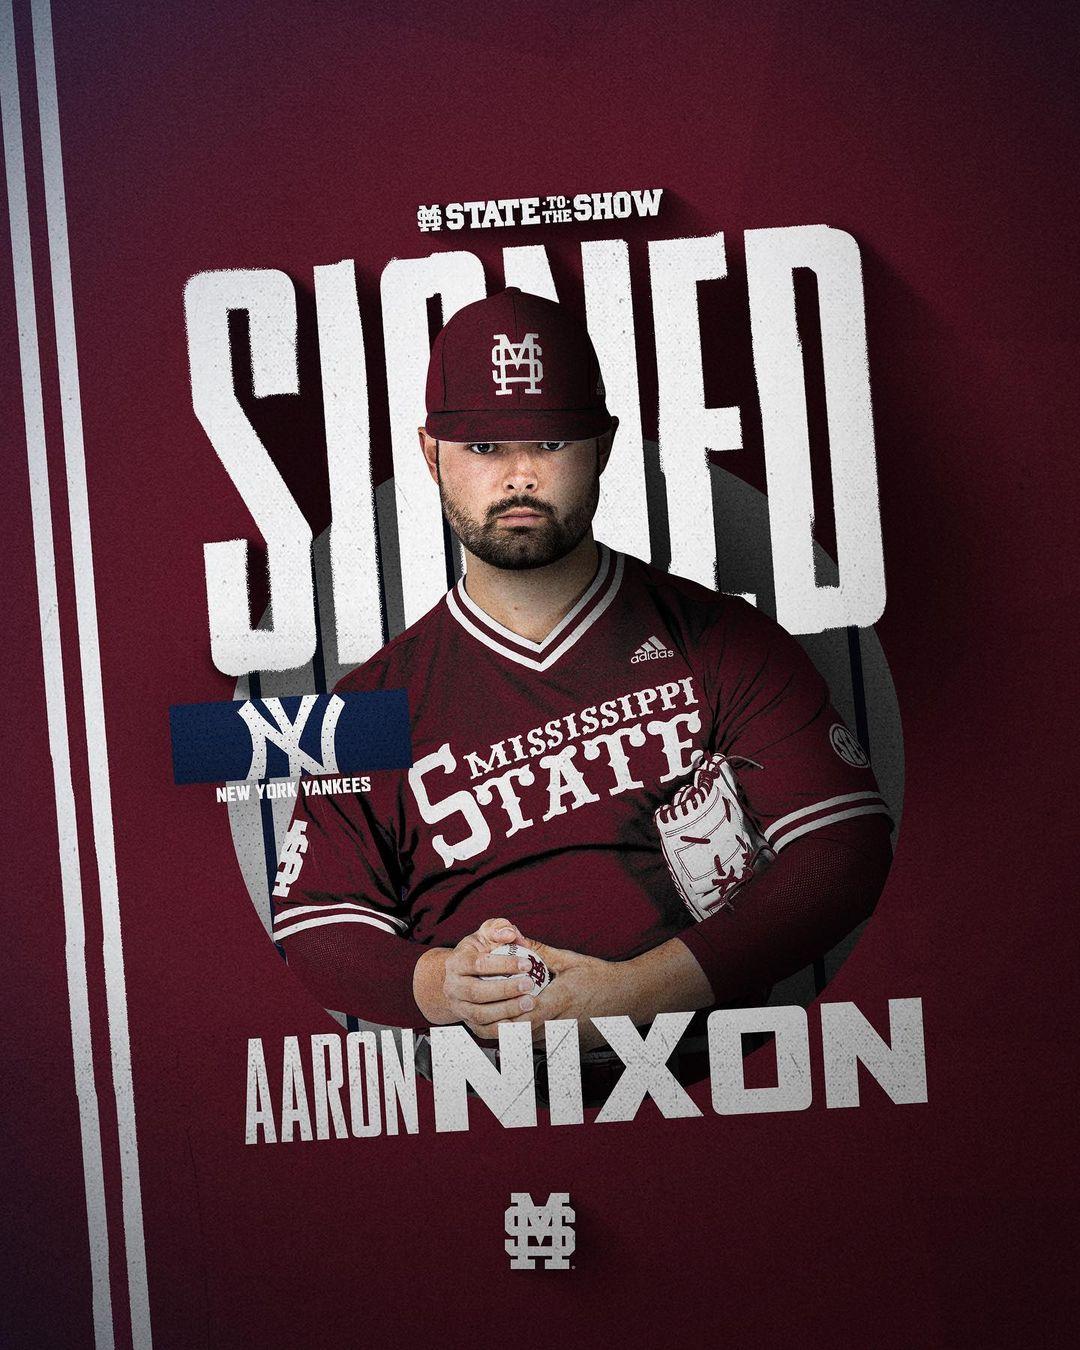 Aaron Nixon Instagram Post Influencer Campaign